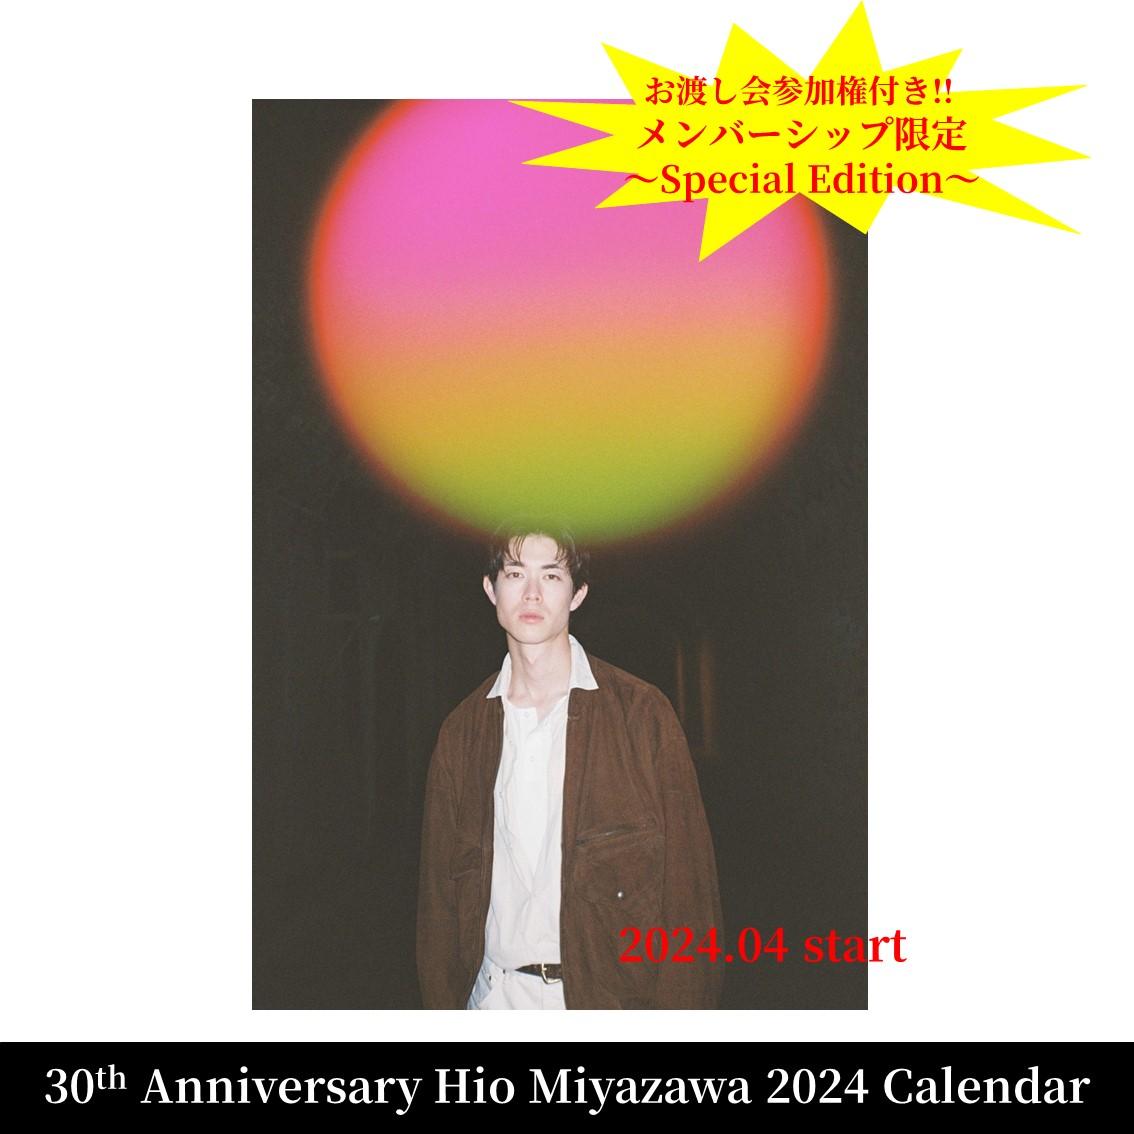 先着追加販売【メンバーシップ限定】30th Anniversary Hio Miyazawa Calendar 2024~Special Edition~